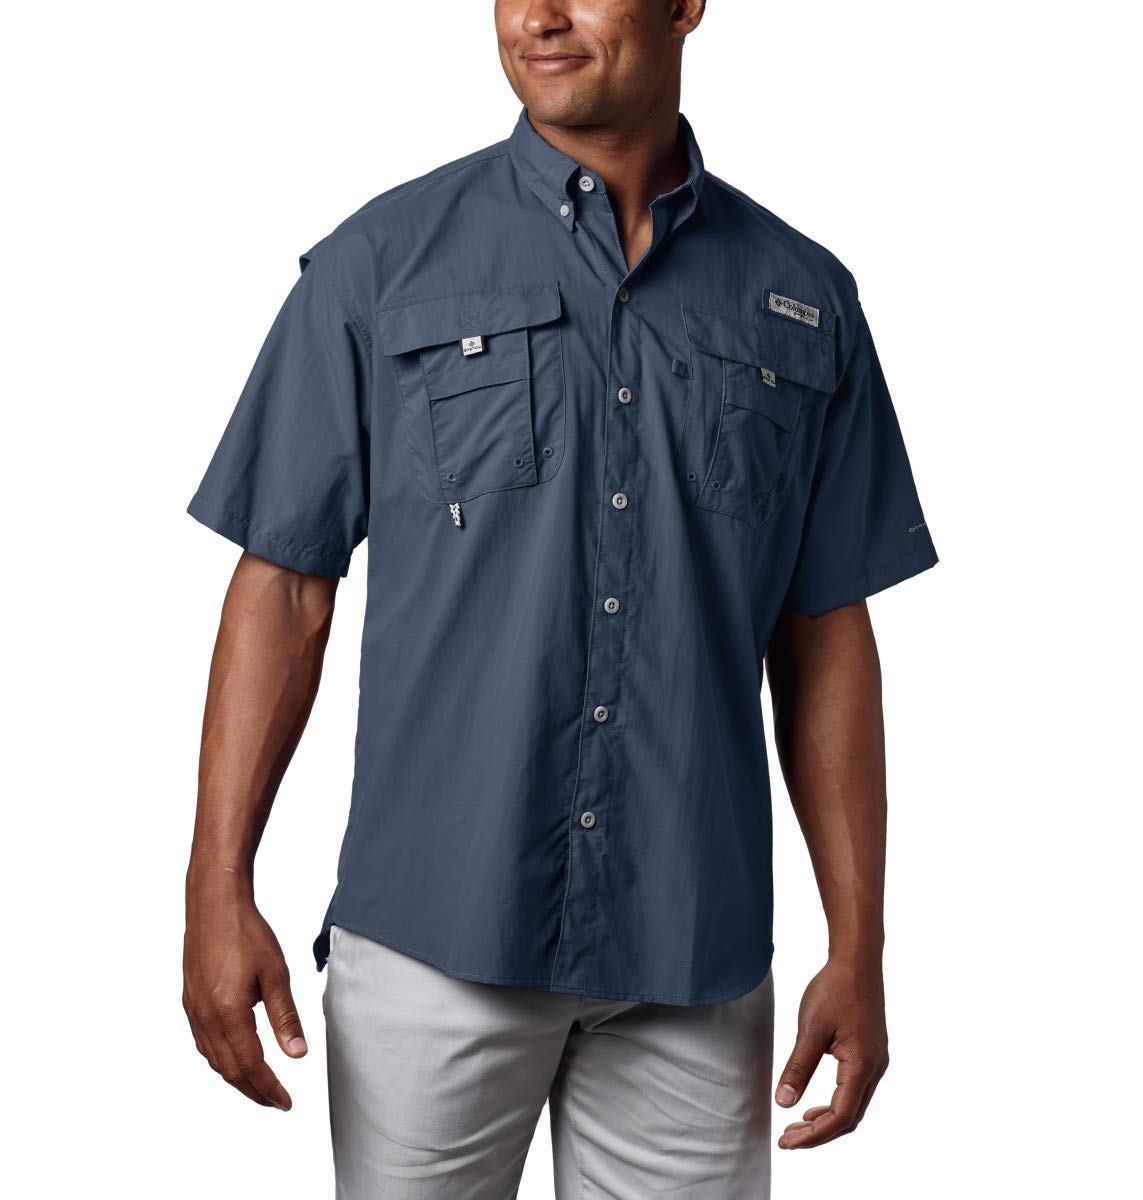 Columbia Men's Bahama II UPF 30 Short Sleeve PFG Fishing Shirt, Collegiate Navy, Small